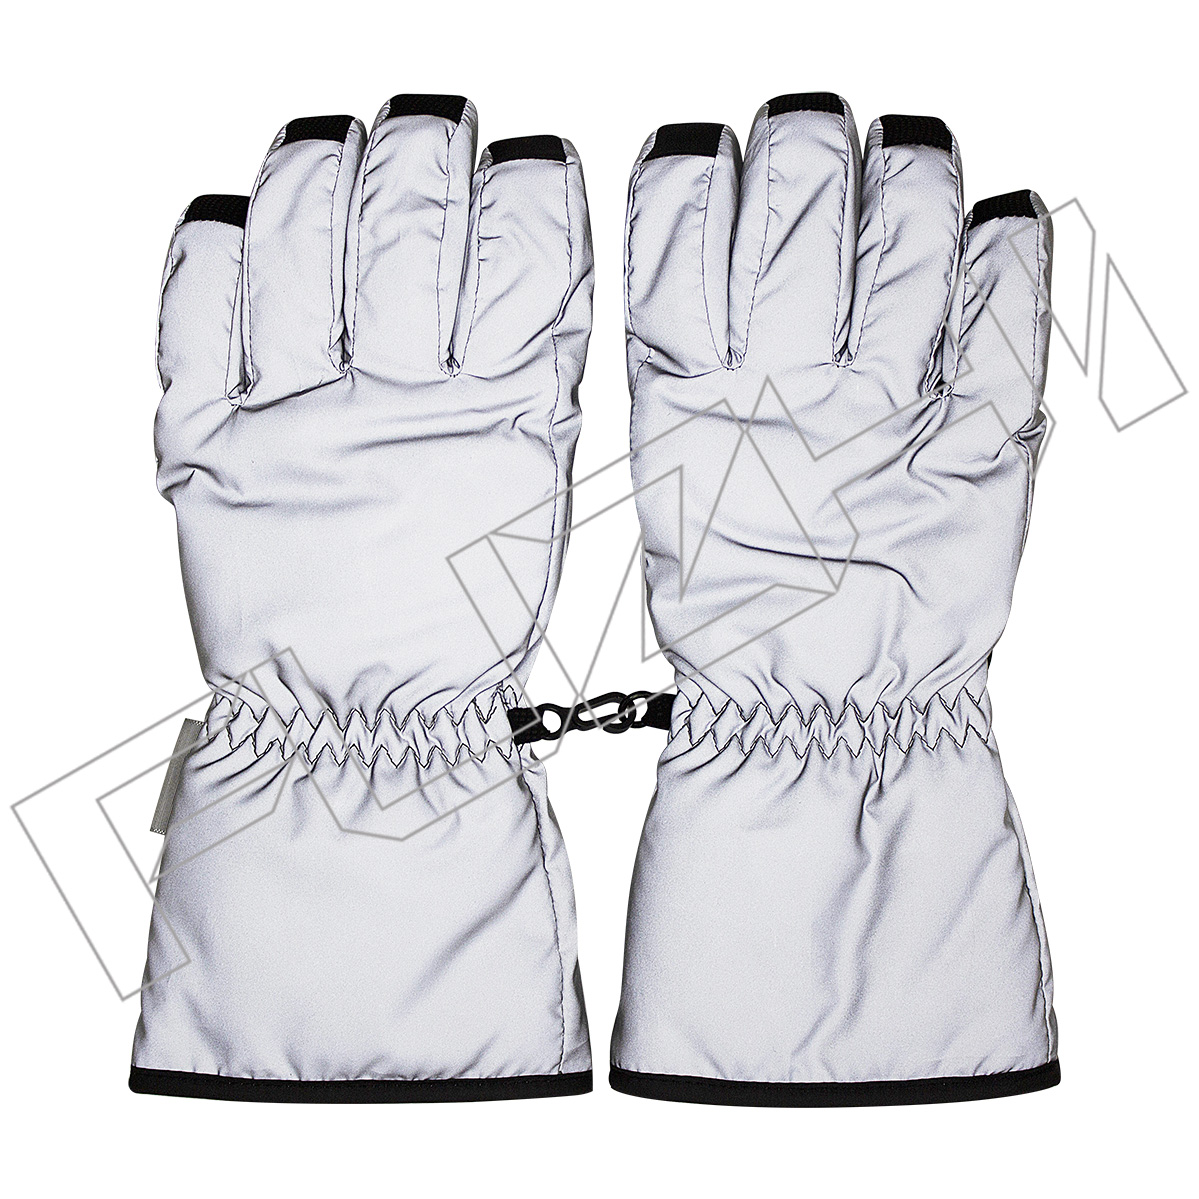 Ανακλαστικά γάντια σκι